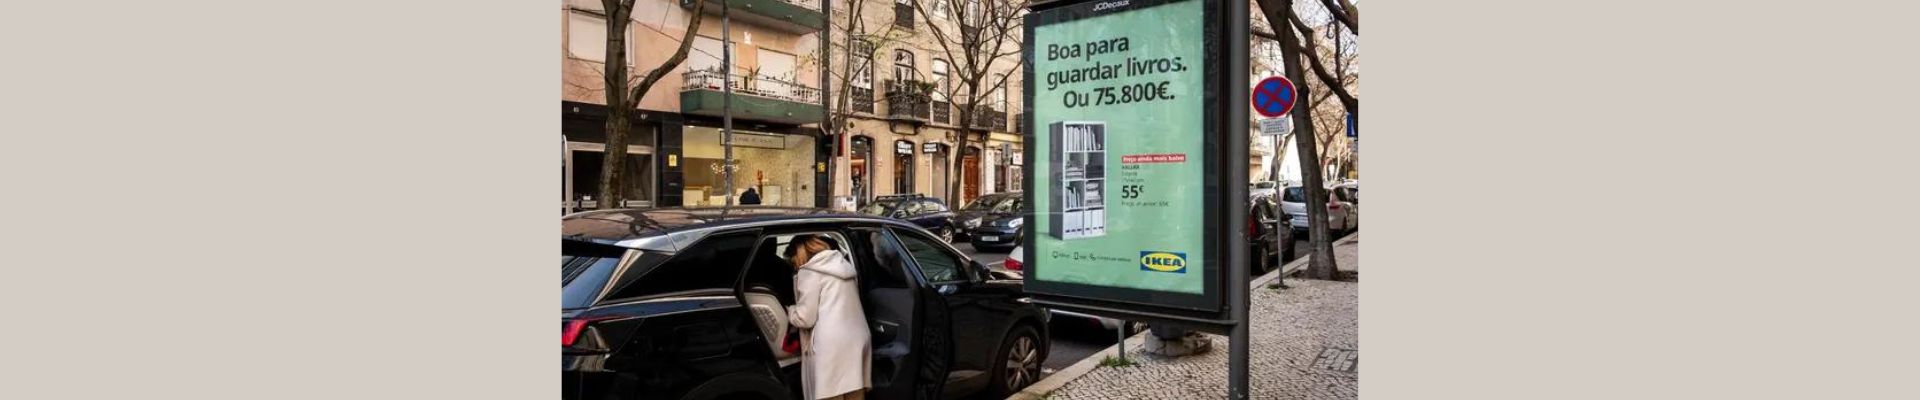 Nova Campanha da IKEA: “Estante boa para guardar livros ou 75.800 euros”